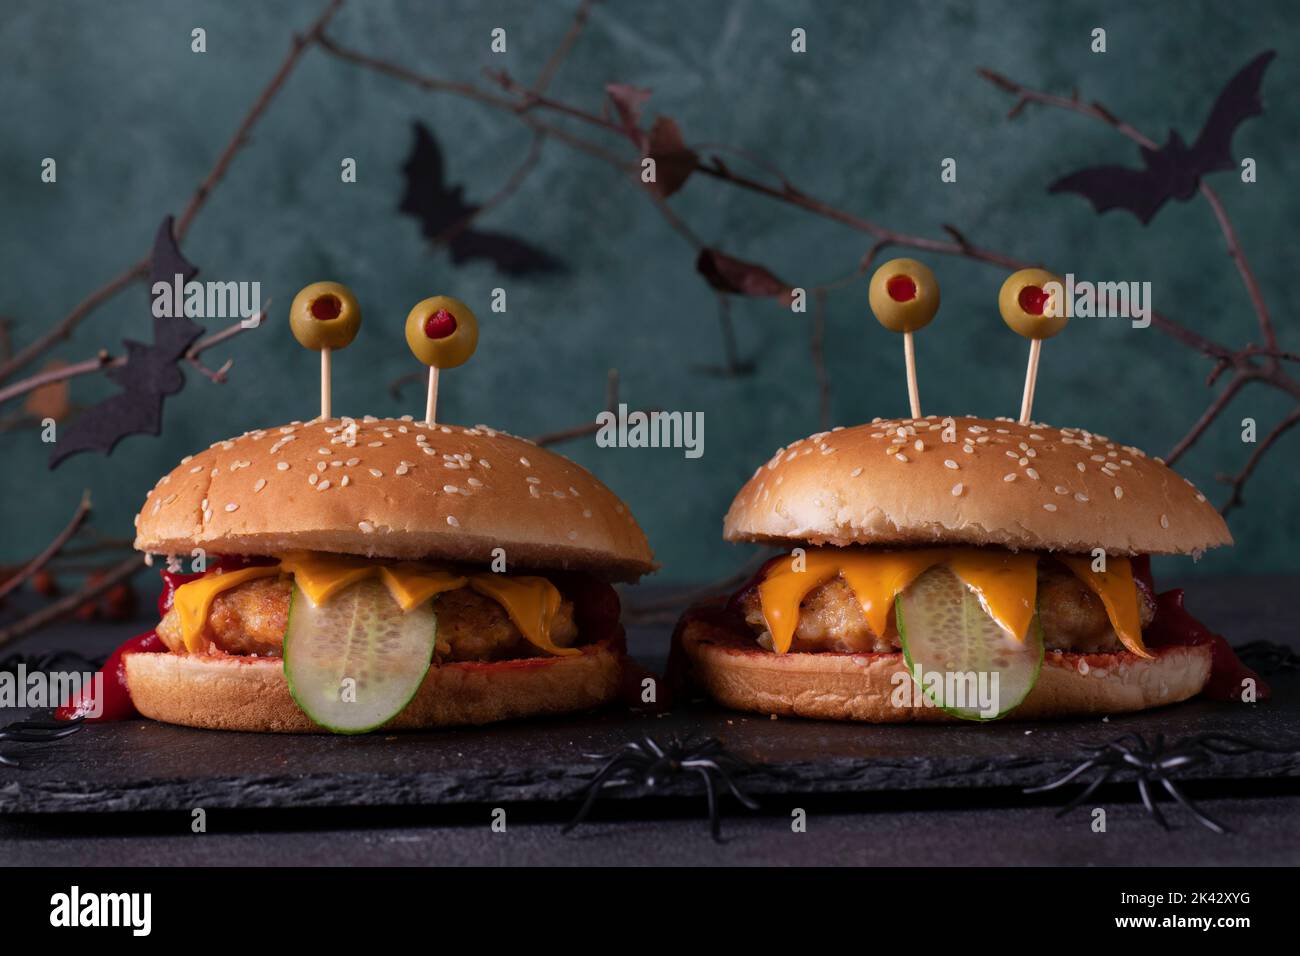 Deux burgers de poulet monstre drôle avec toasts au fromage, ketchup, concombre et yeux d'olive. Cuisine créative d'Halloween Banque D'Images